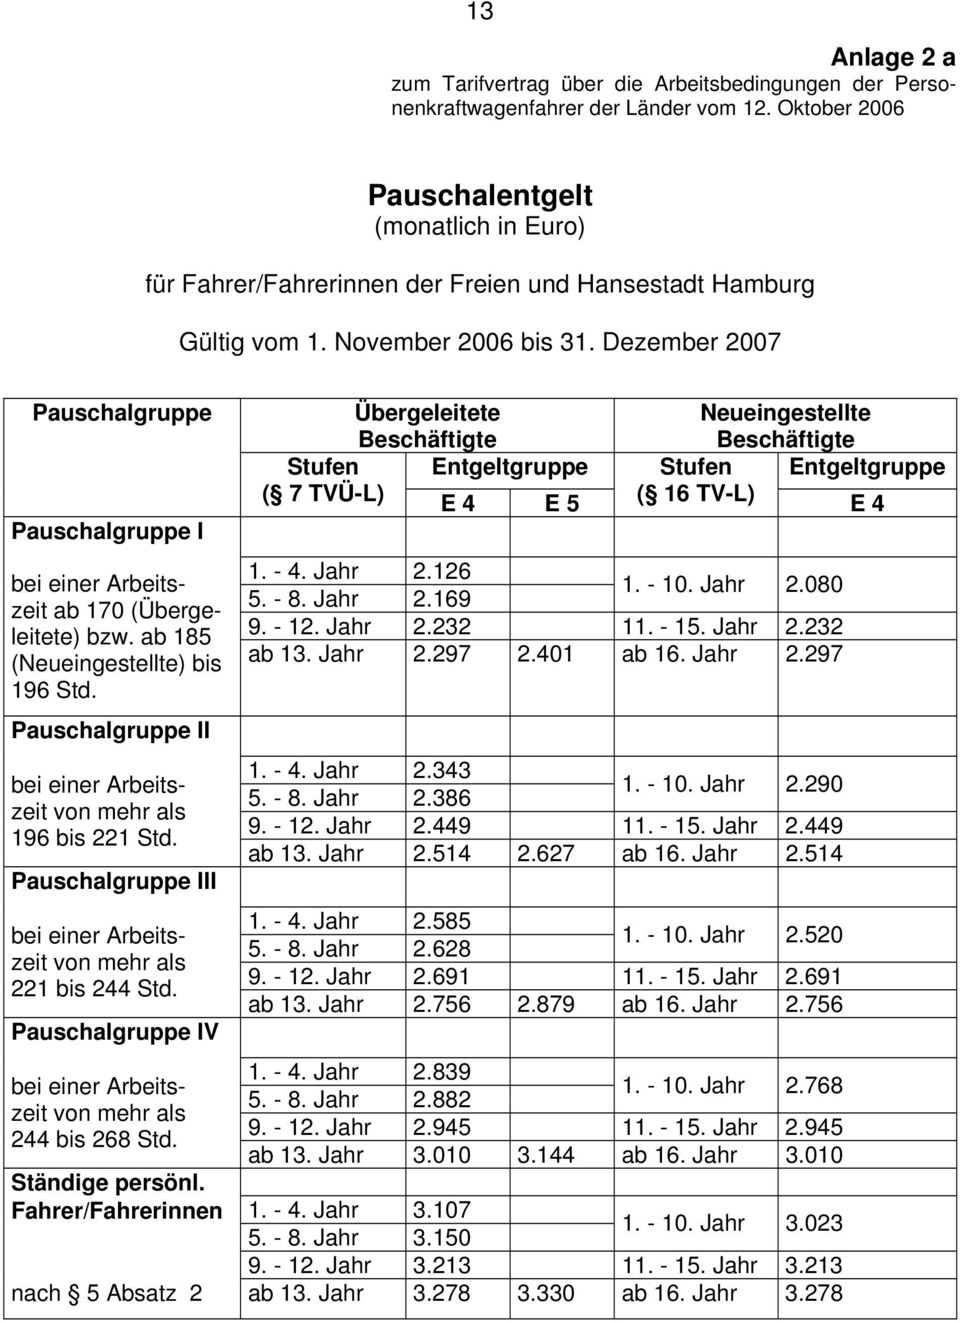 Dezember 2007 Pauschalgruppe Pauschalgruppe I ab 170 (Übergeleitete) bzw. ab 185 (Neueingestellte) bis 196 Std. Pauschalgruppe II 196 bis 221 Std. Pauschalgruppe III 221 bis 244 Std.